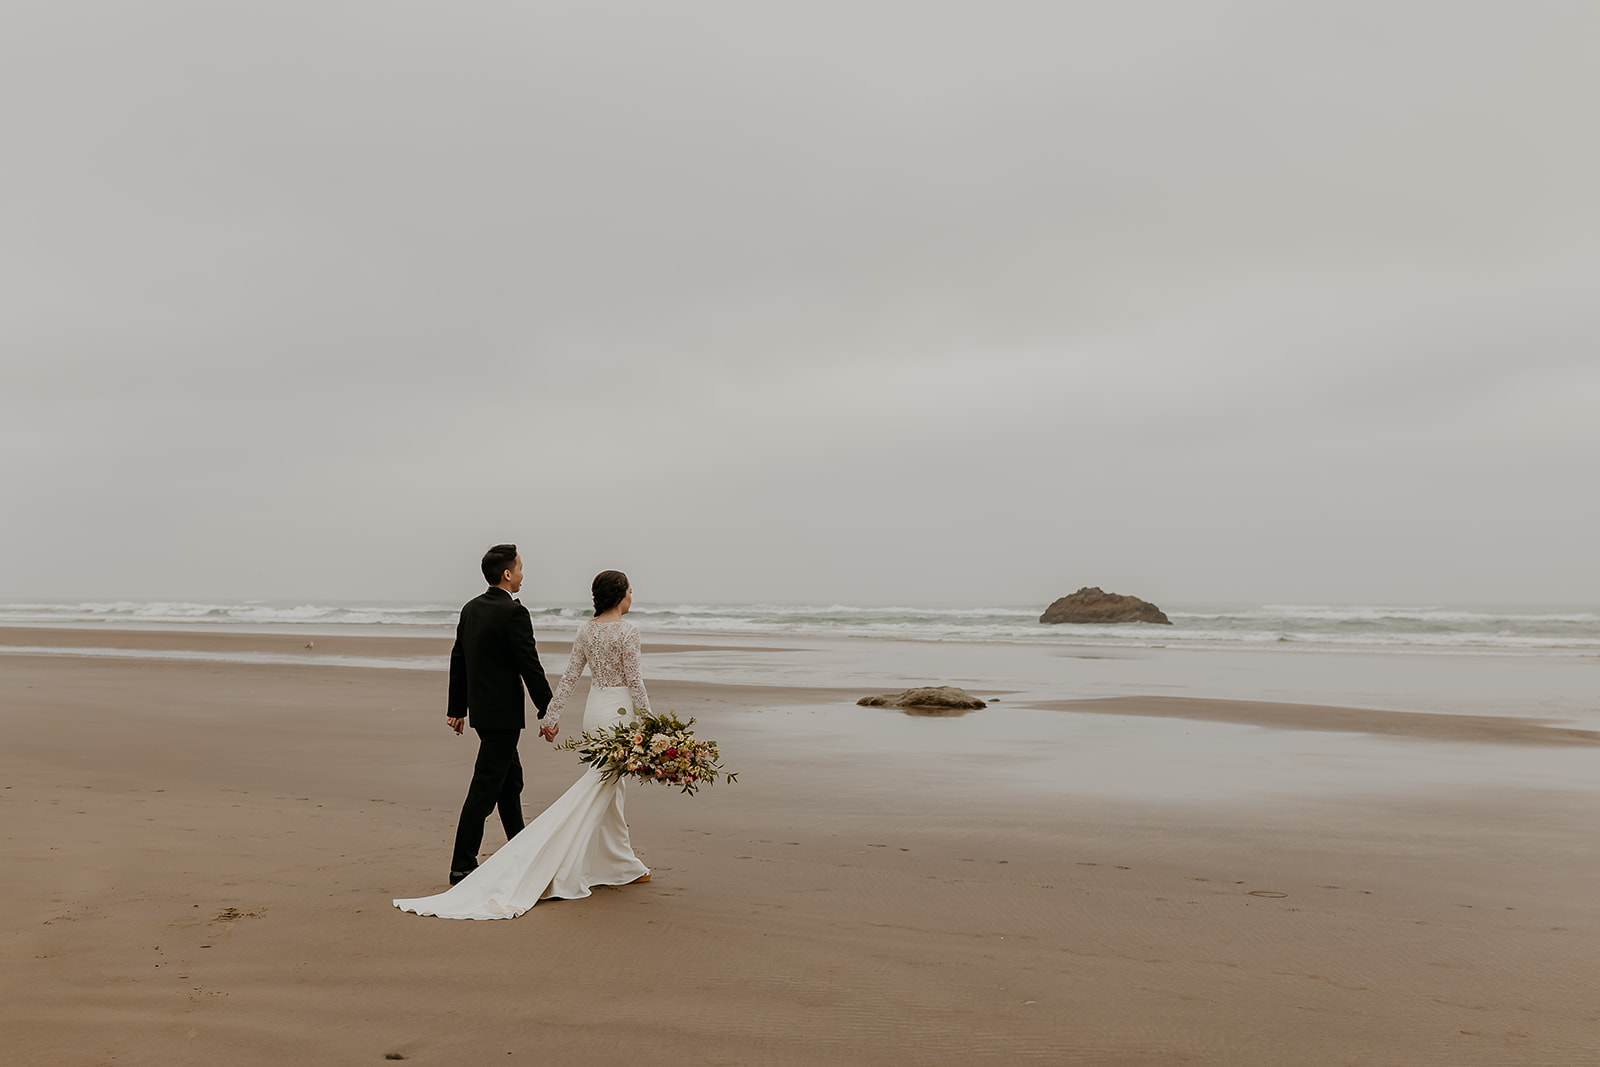 woodsy beach wedding on the oregon coast